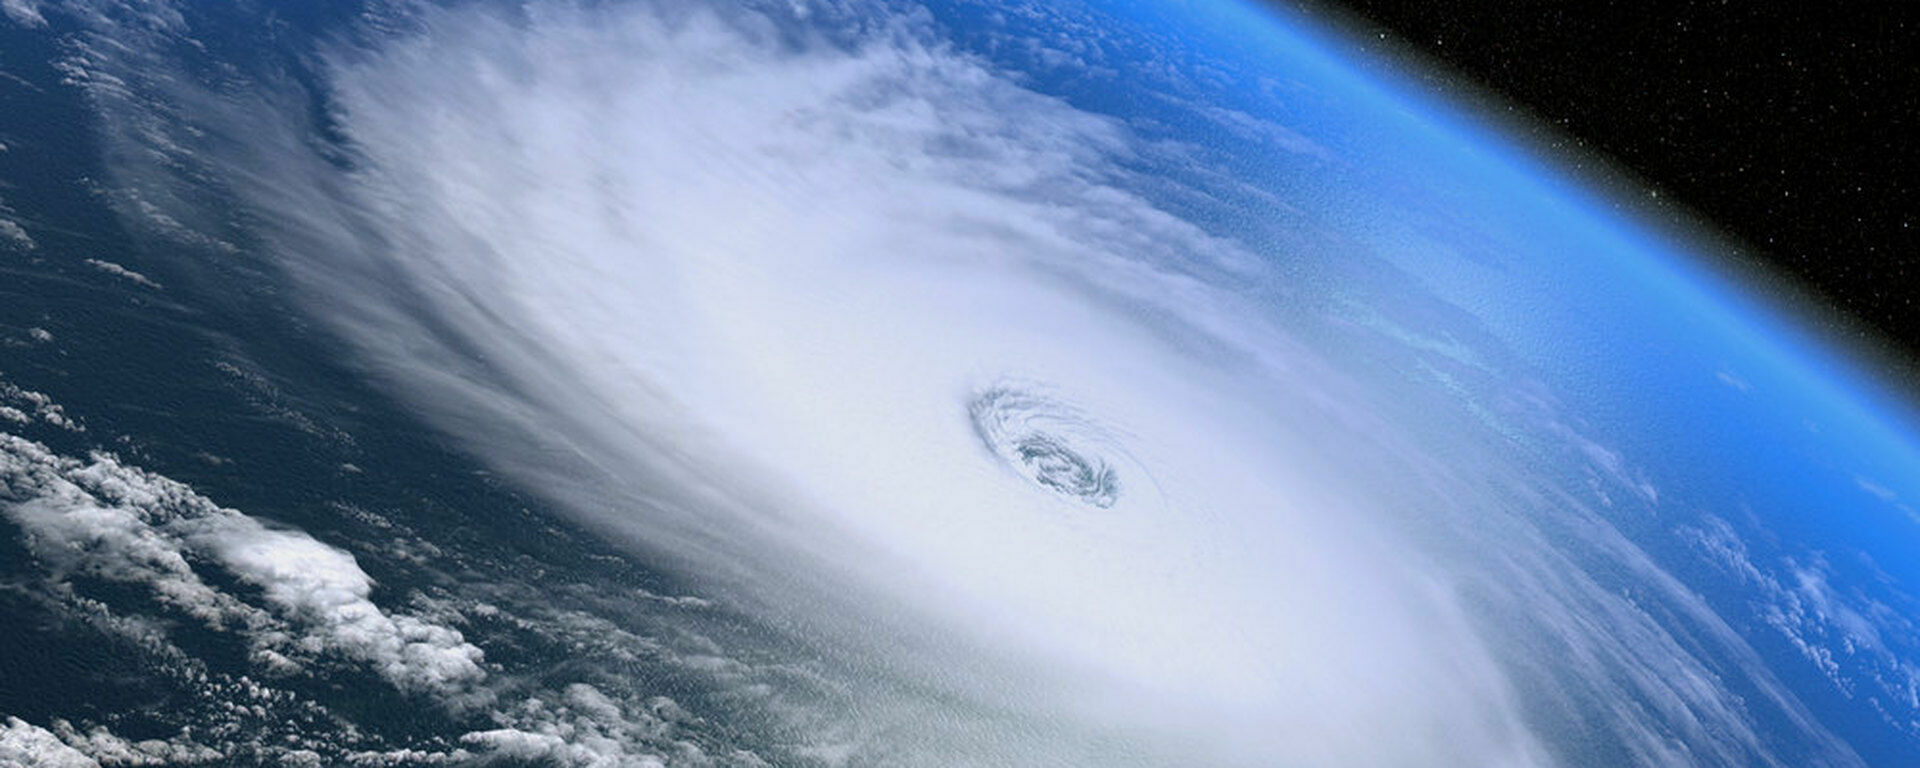 Ураган "Уилла" в Тихом океане усилился до четвертой степени